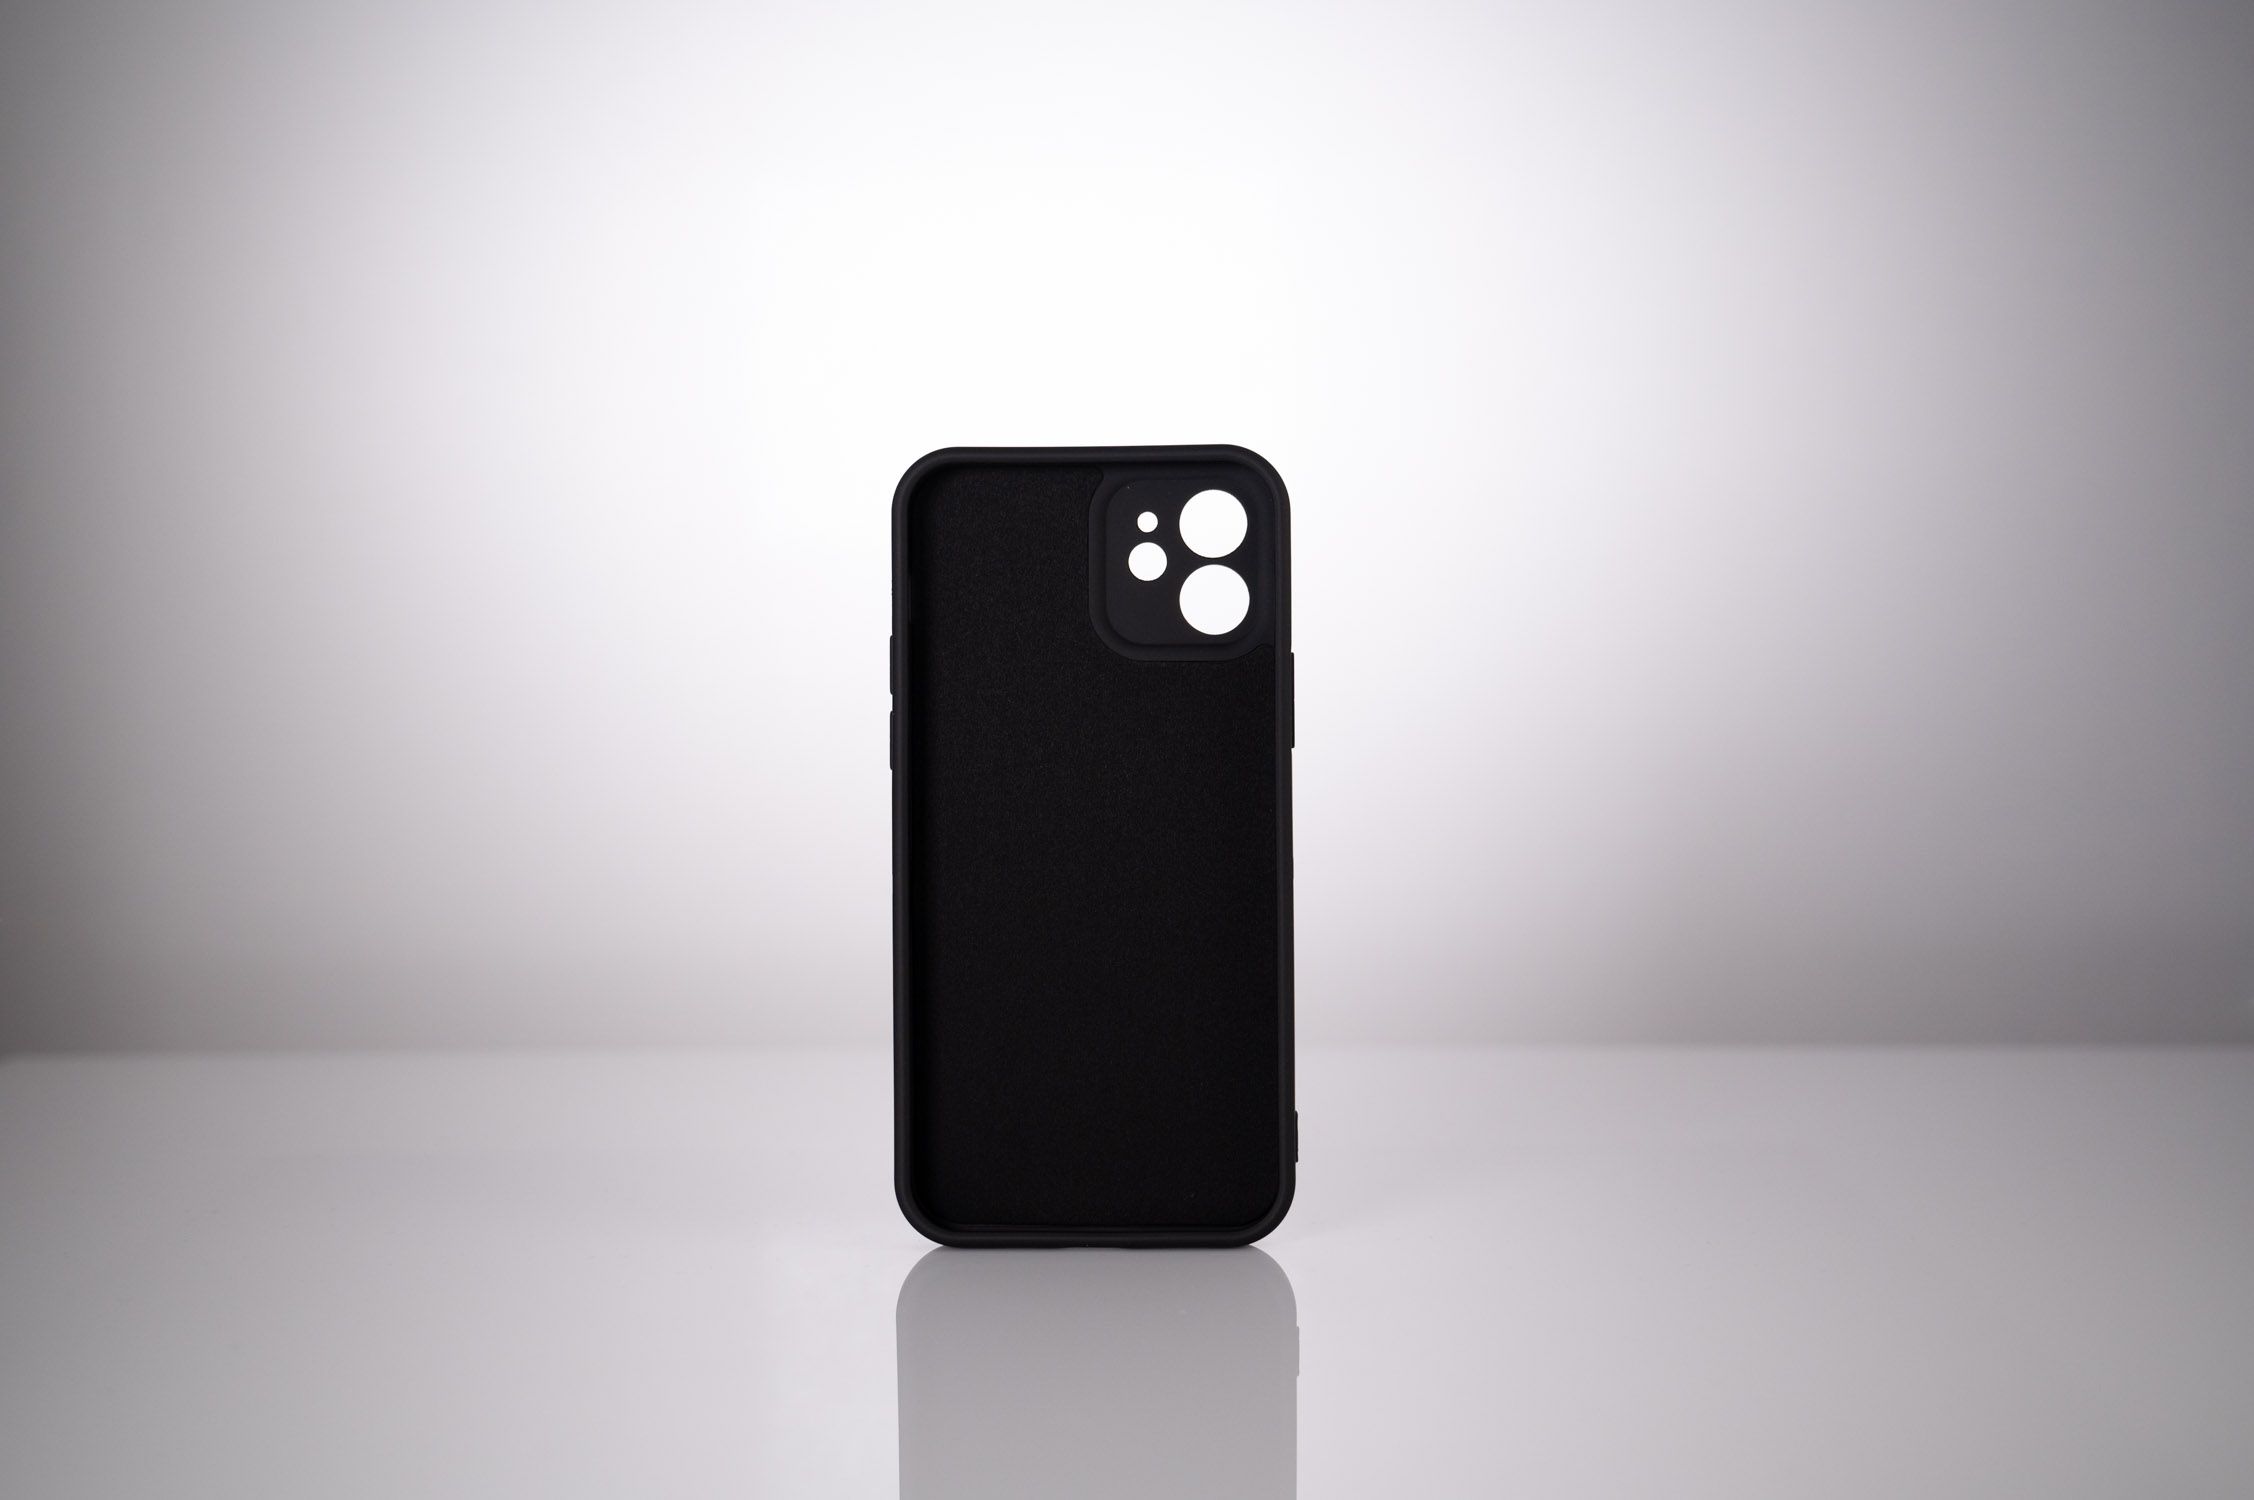 HUSA SMARTPHONE Spacer pentru Iphone 13 Pro Max, grosime 2mm, material flexibil silicon + interior cu microfibra, negru 